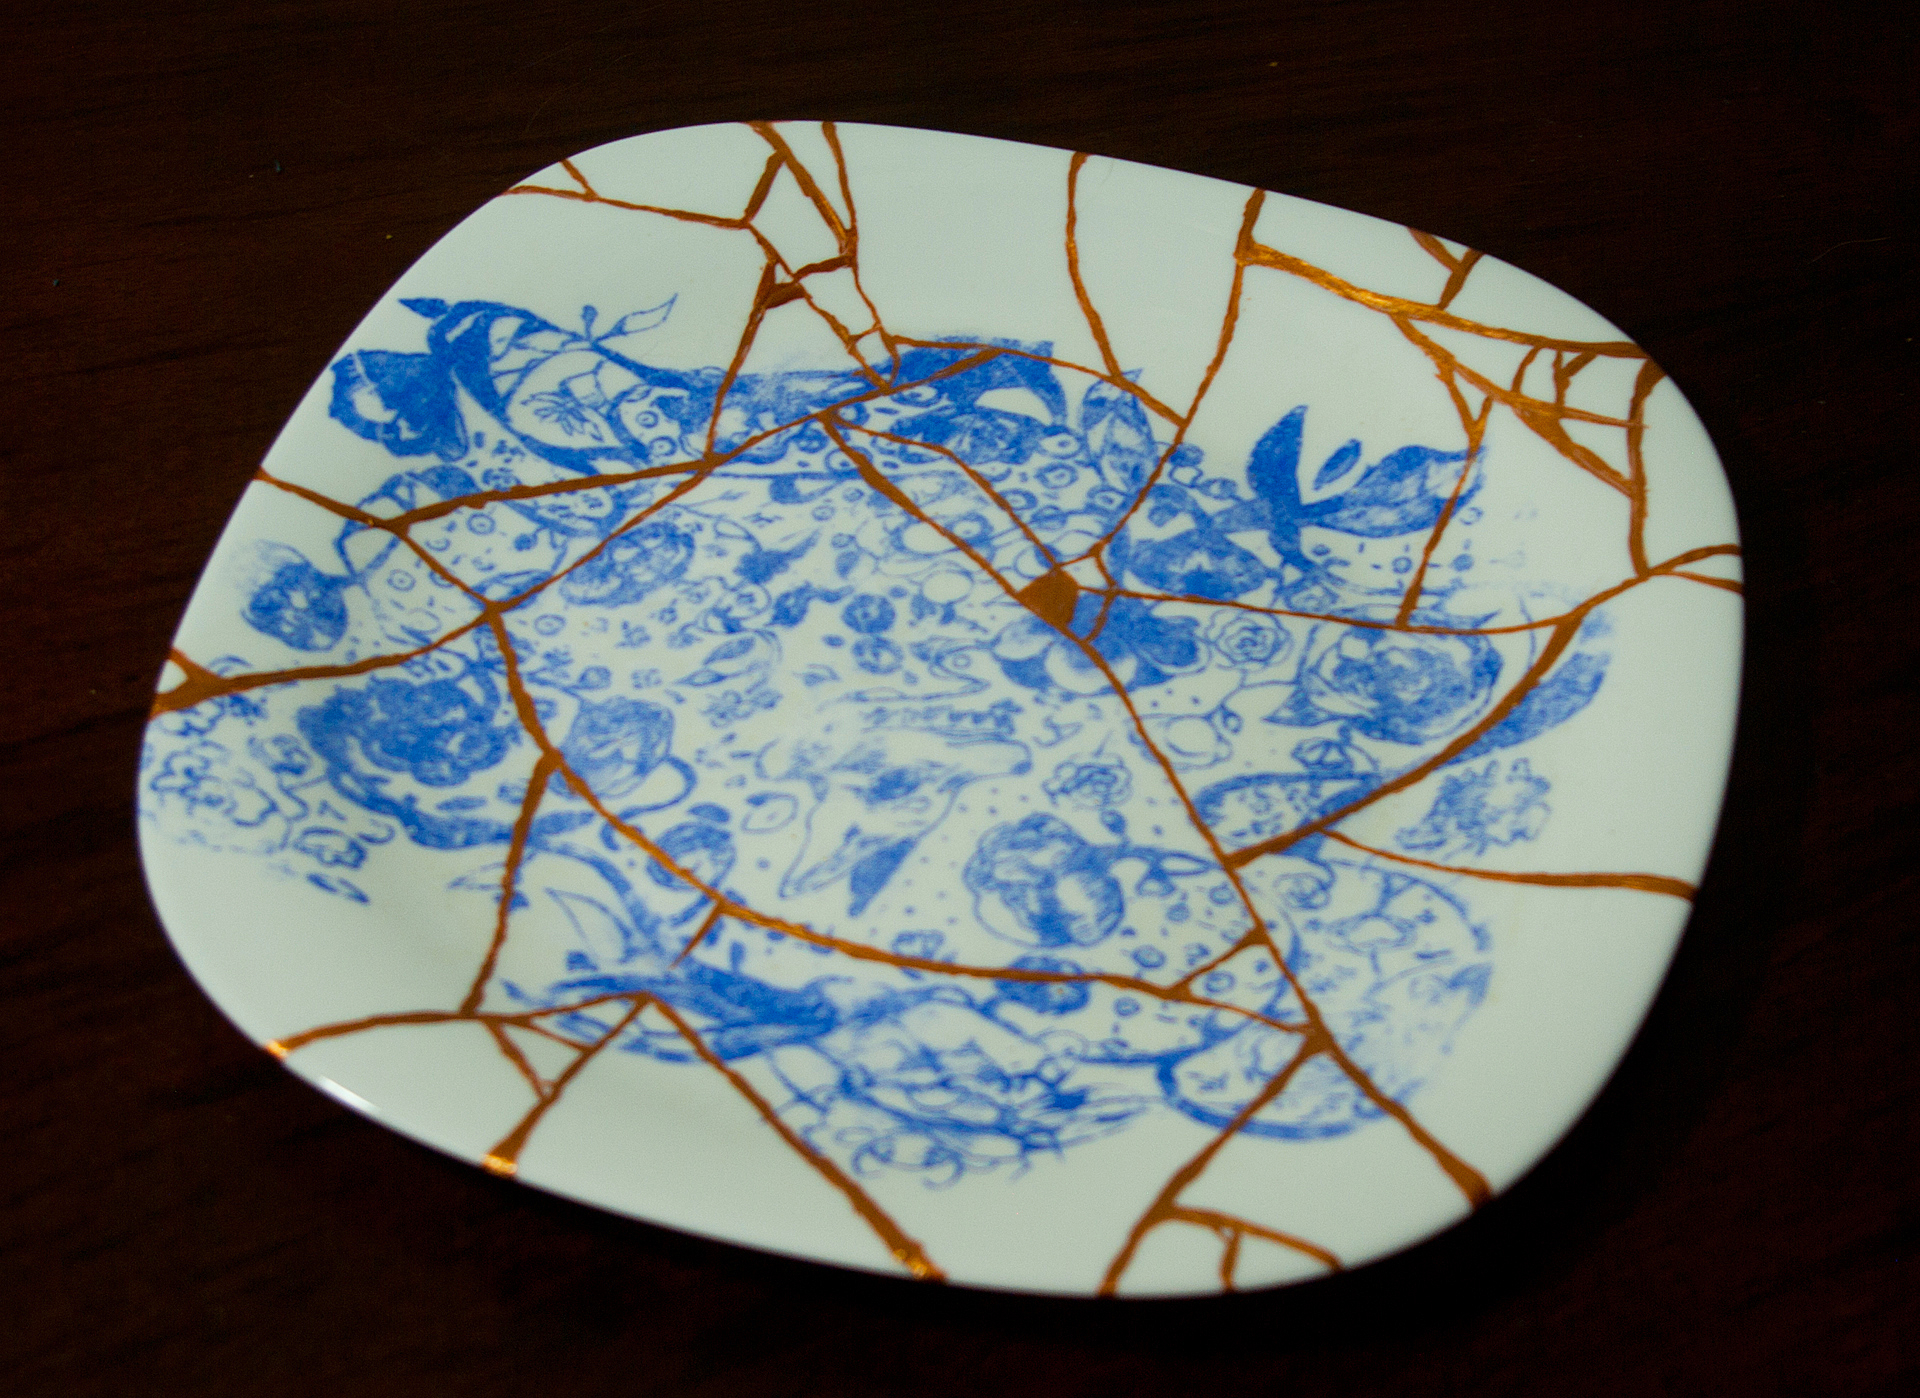 Praca przedstawia trzy talerze, jeden z nich jest w całości, drugi rozbity, a trzeci sklejony. Na każdym z nich znajduje się nadruk w postaci niebieskiego, linearnego rysunku.